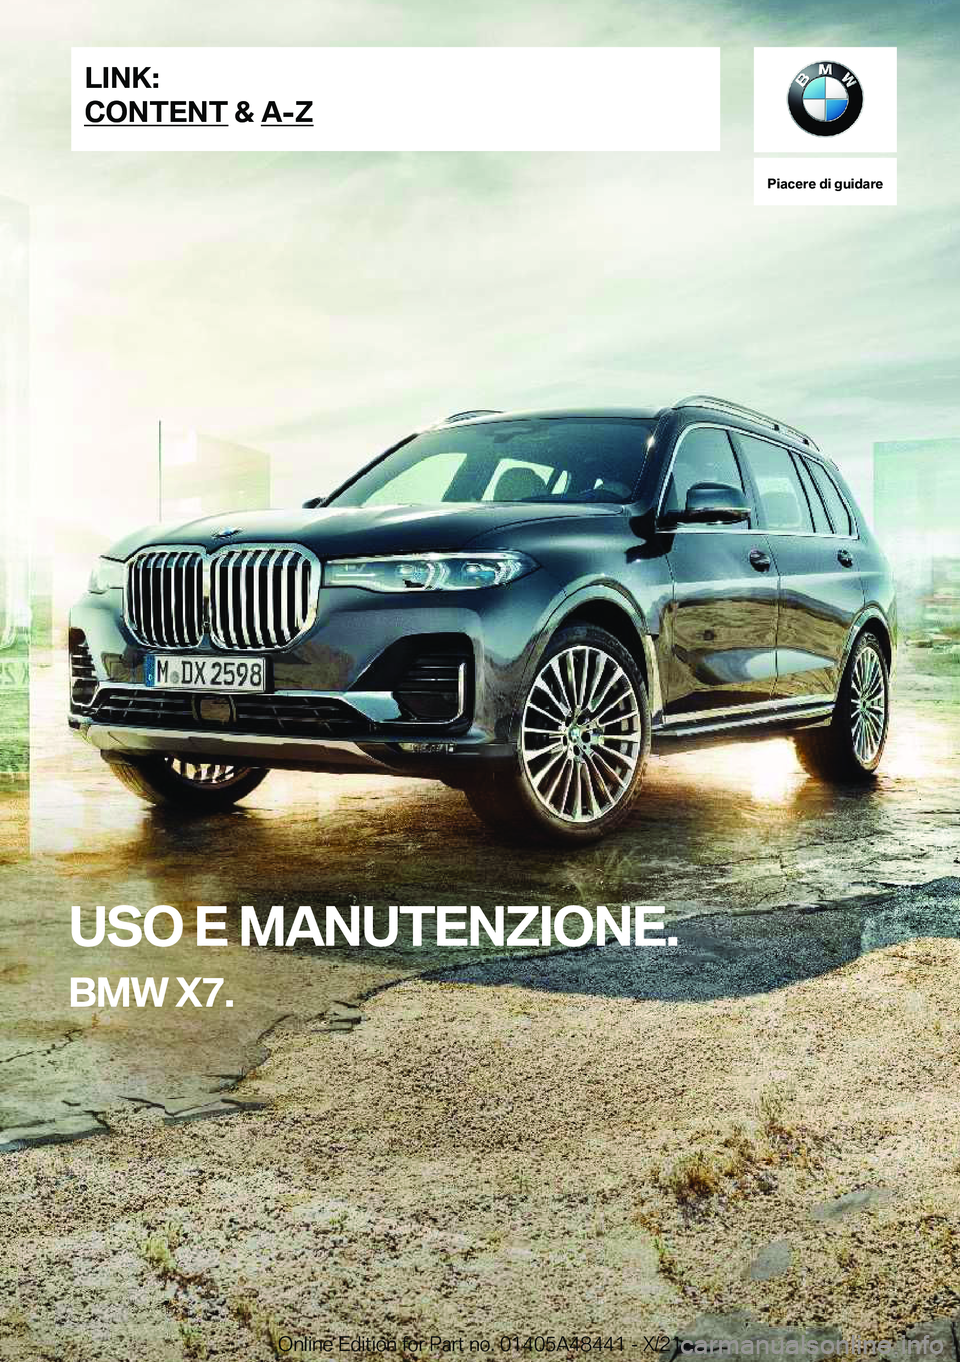 BMW X7 2022  Libretti Di Uso E manutenzione (in Italian) �P�i�a�c�e�r�e��d�i��g�u�i�d�a�r�e
�U�S�O��E��M�A�N�U�T�E�N�Z�I�O�N�E�.
�B�M�W��X�7�.�L�I�N�K�:
�C�O�N�T�E�N�T��&��A�-�Z�O�n�l�i�n�e��E�d�i�t�i�o�n��f�o�r��P�a�r�t��n�o�.��0�1�4�0�5�A�4�8�